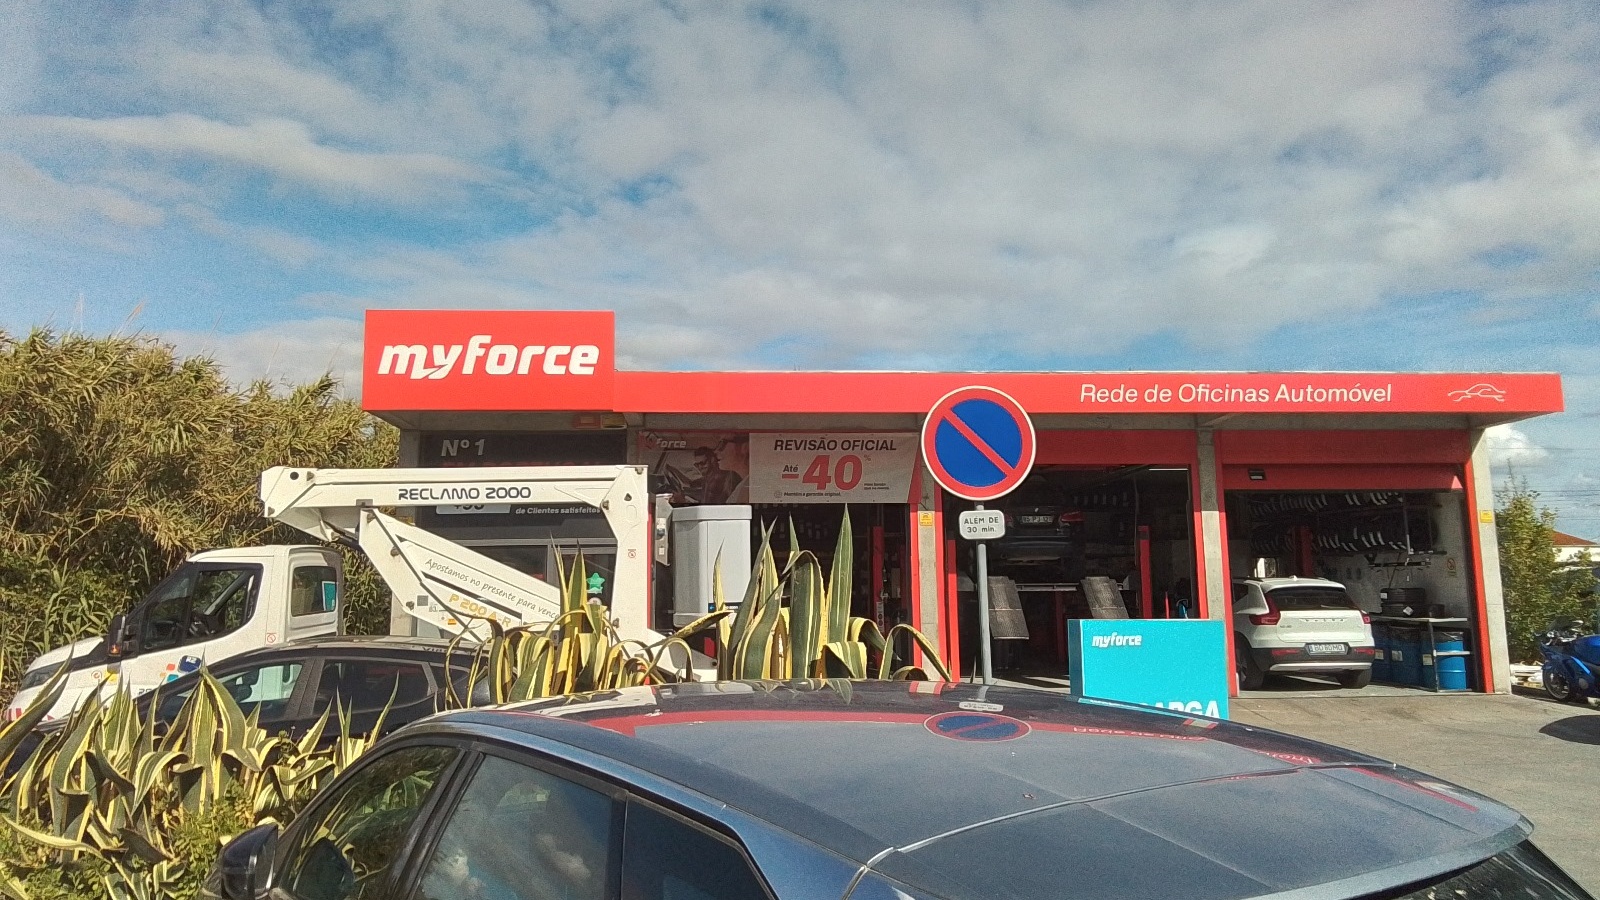 MyForce Vila Franca de Xira